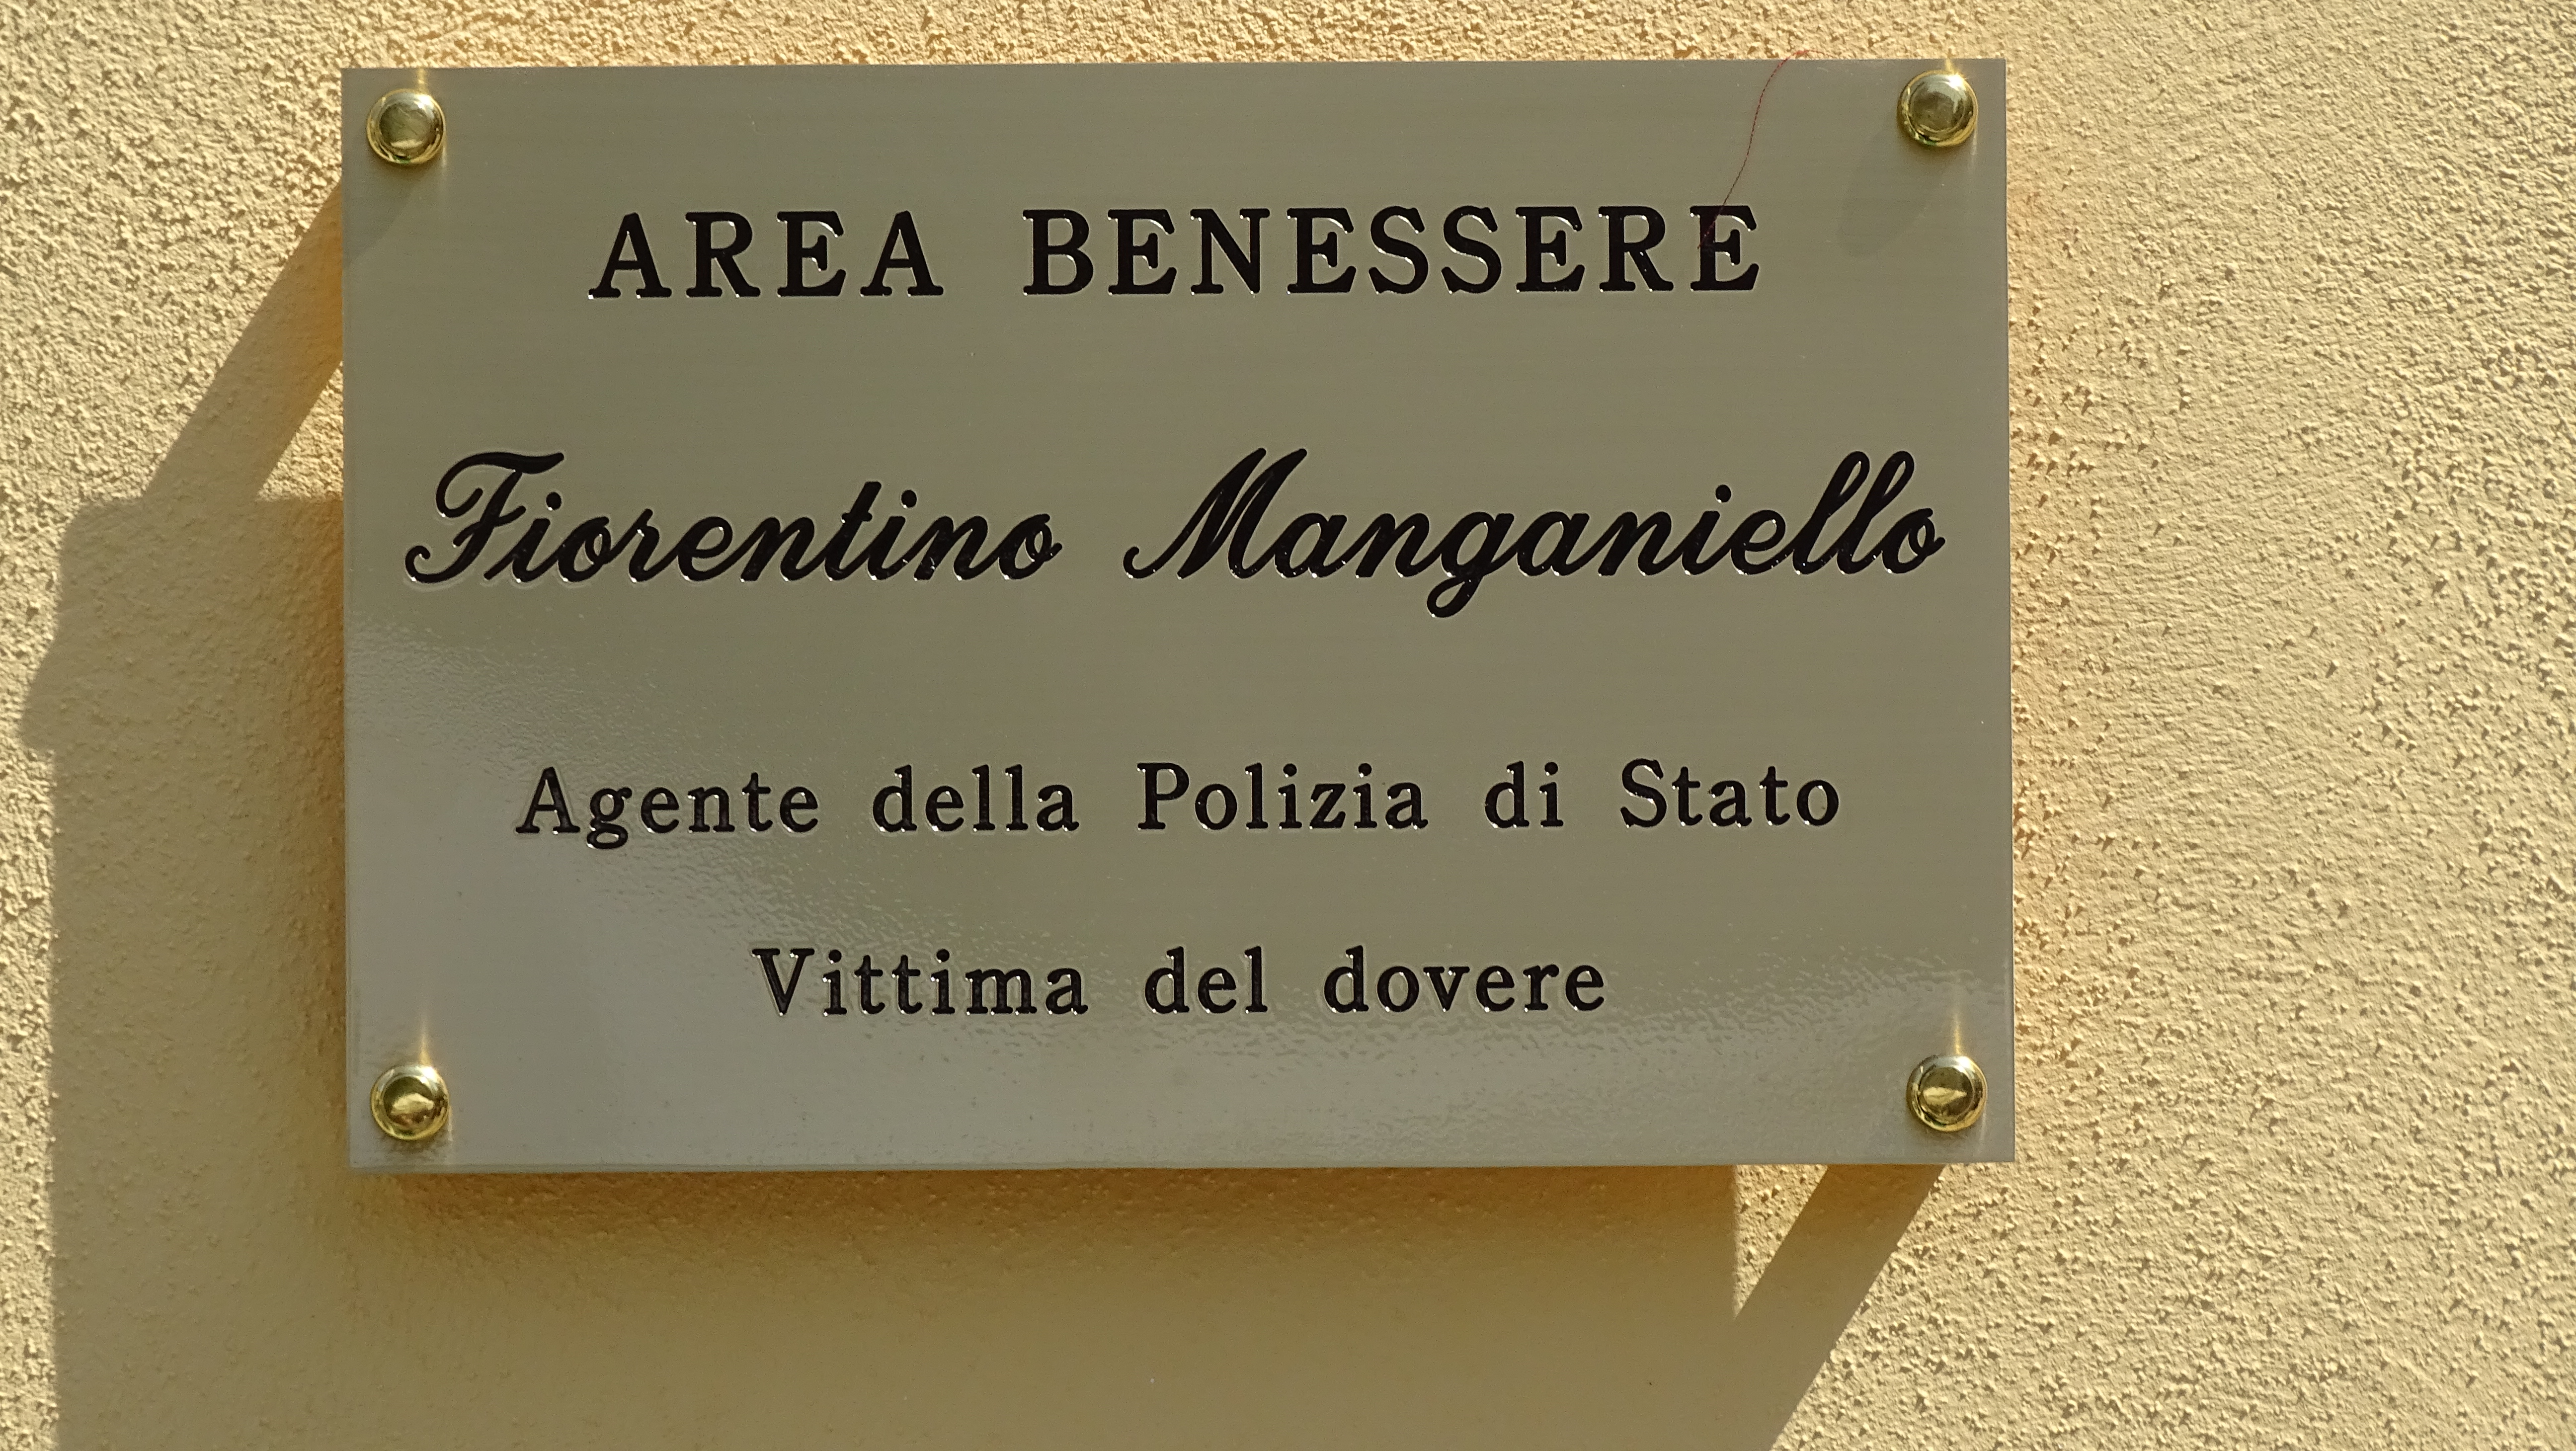 Intitolata la nuova “Area Benessere” della Questura alla memoria dell’Agente Fiorentino Manganiello e inaugurazione dei nuovi locali del Gabinetto Provinciale Polizia Scientifica